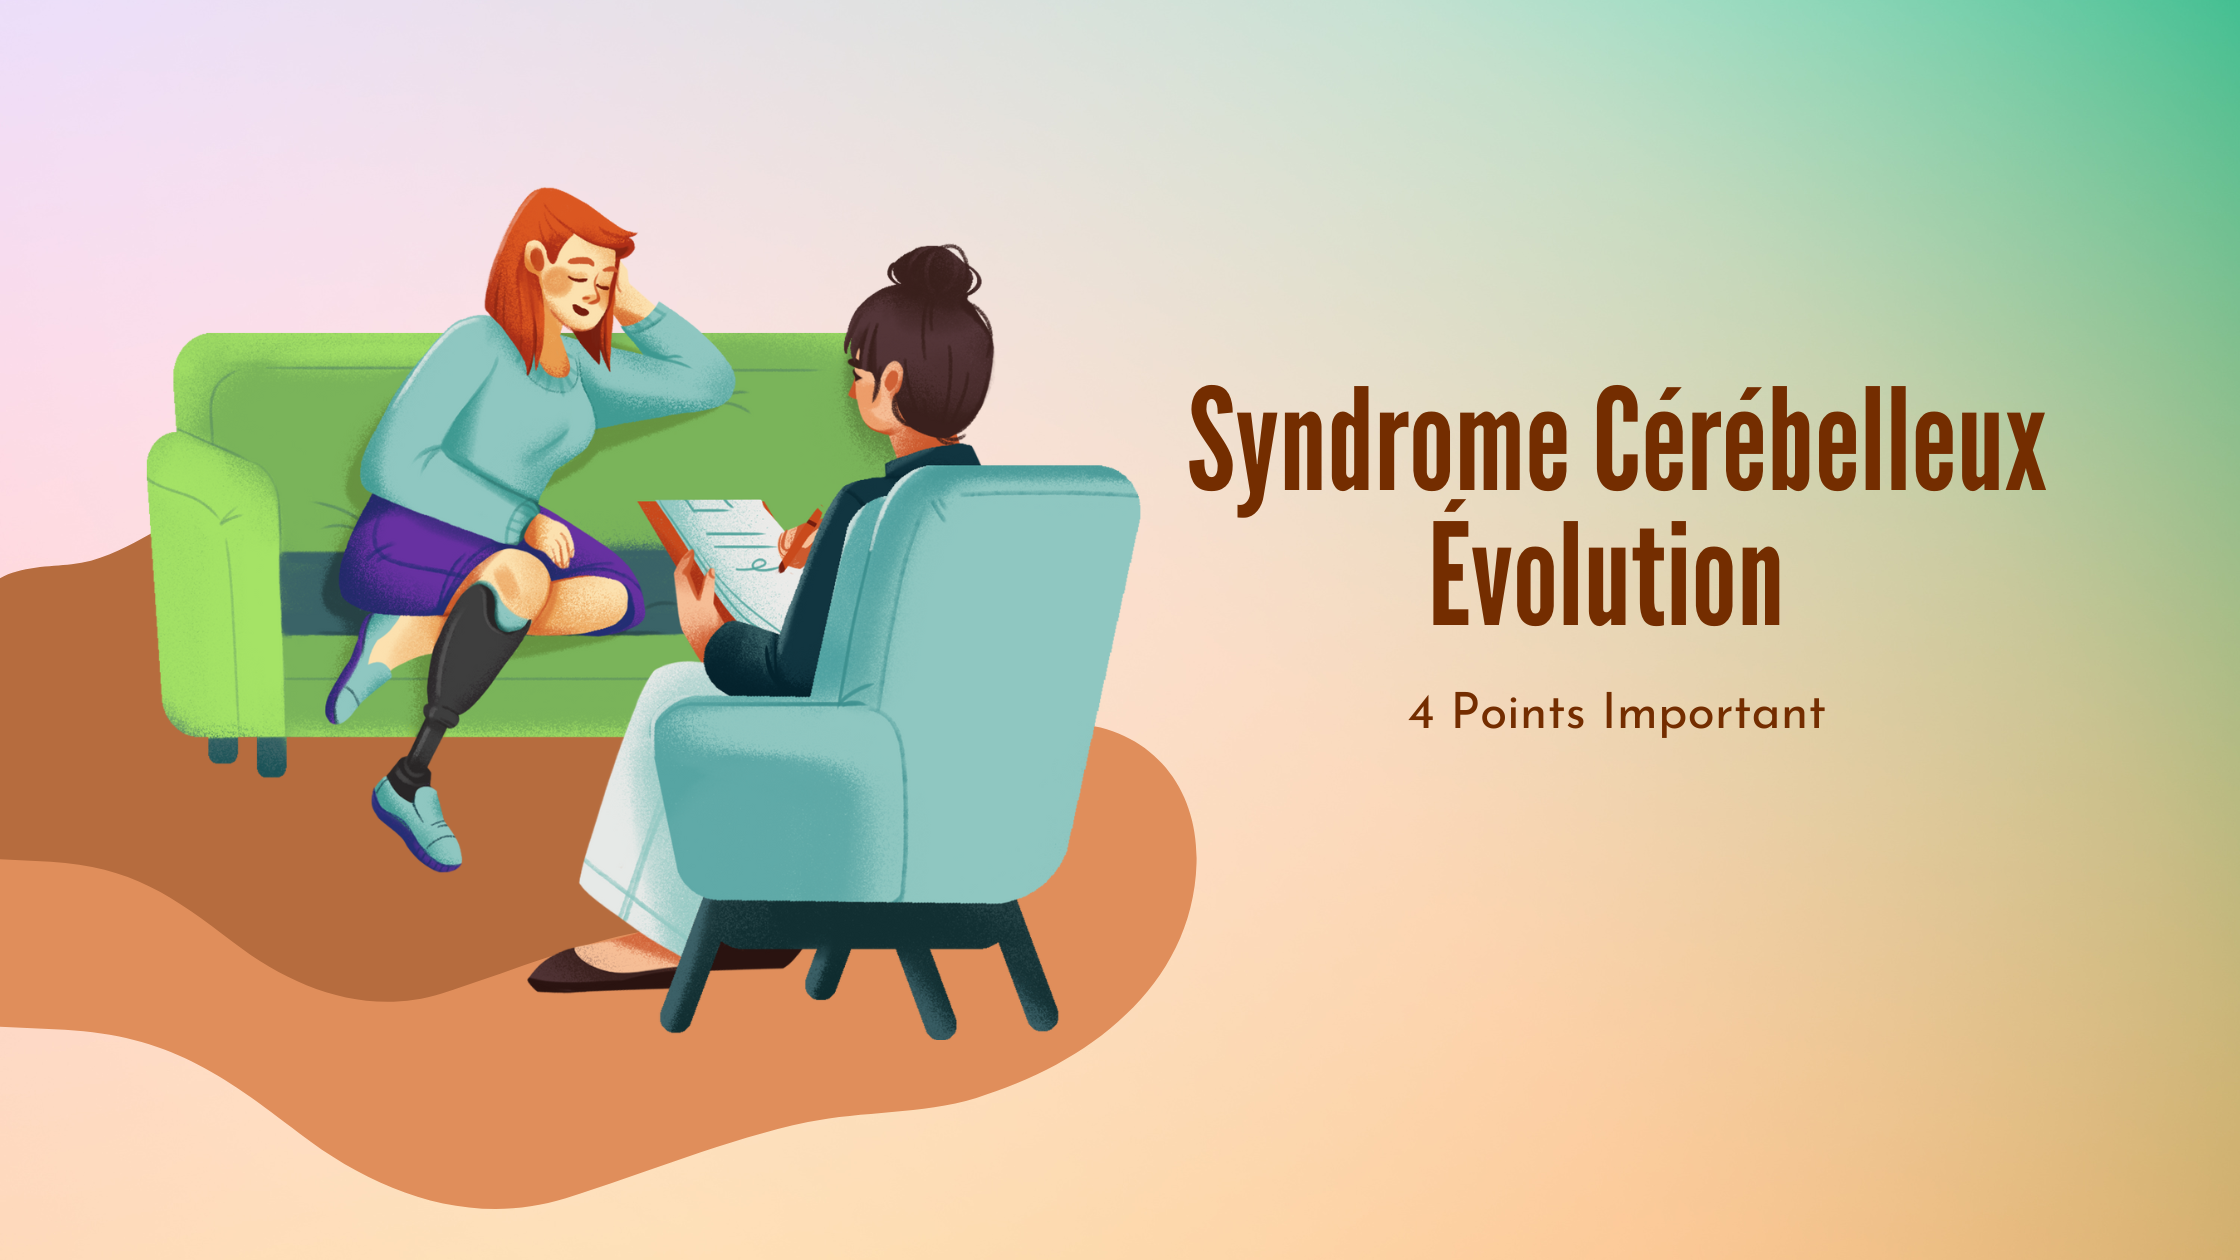 Syndrome Cérébelleux Évolution | 4 Points Important